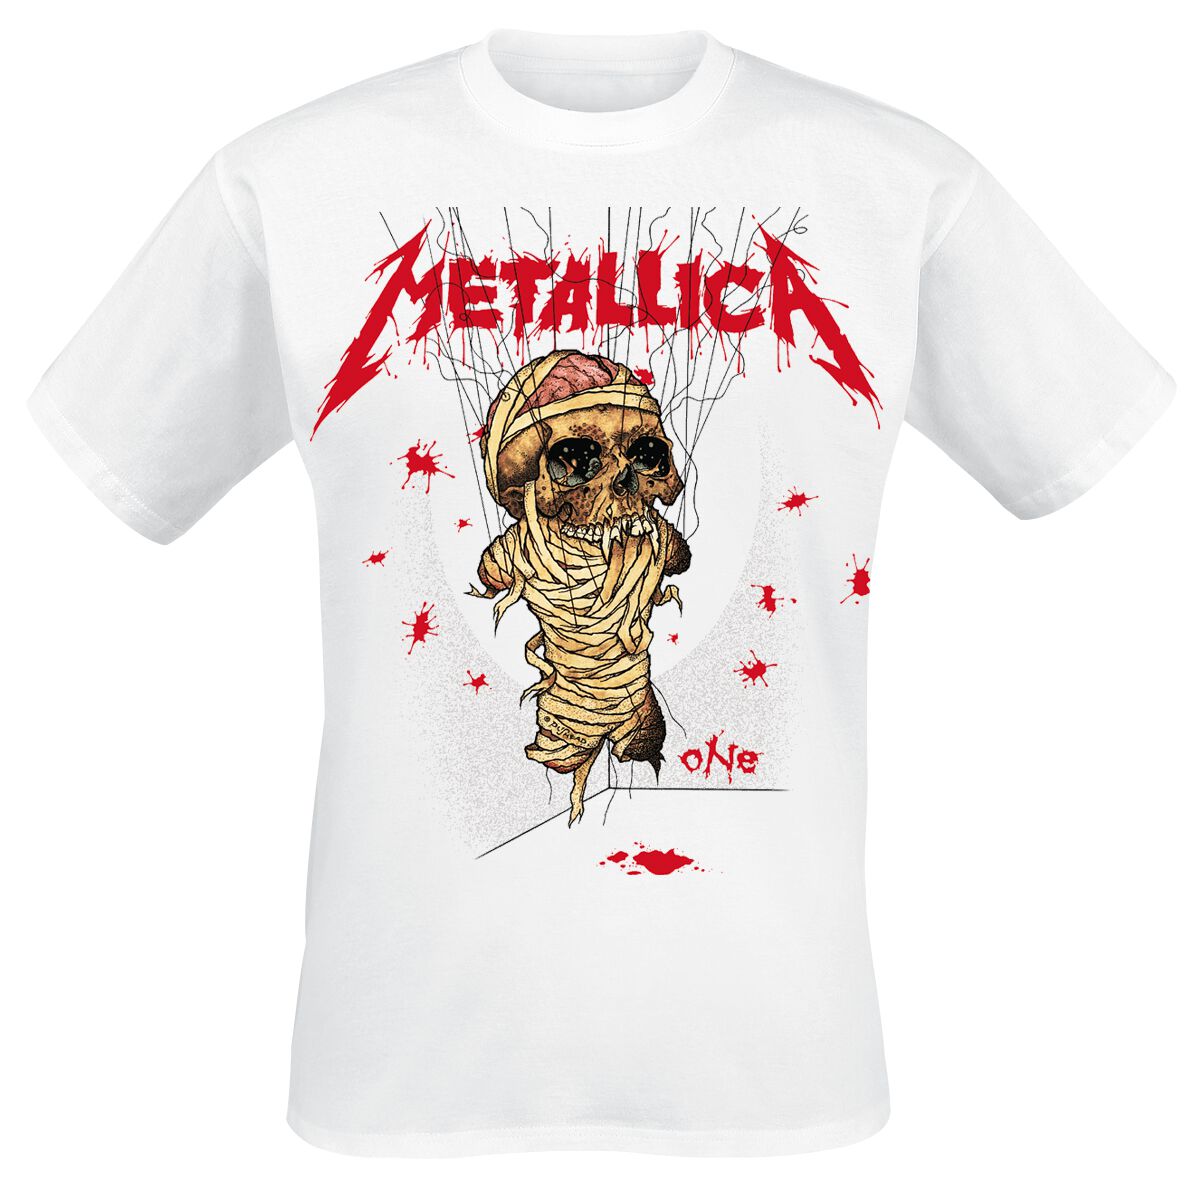 Metallica T-Shirt - One Landmine - S bis 3XL - für Männer - Größe M - weiß  - Lizenziertes Merchandise!